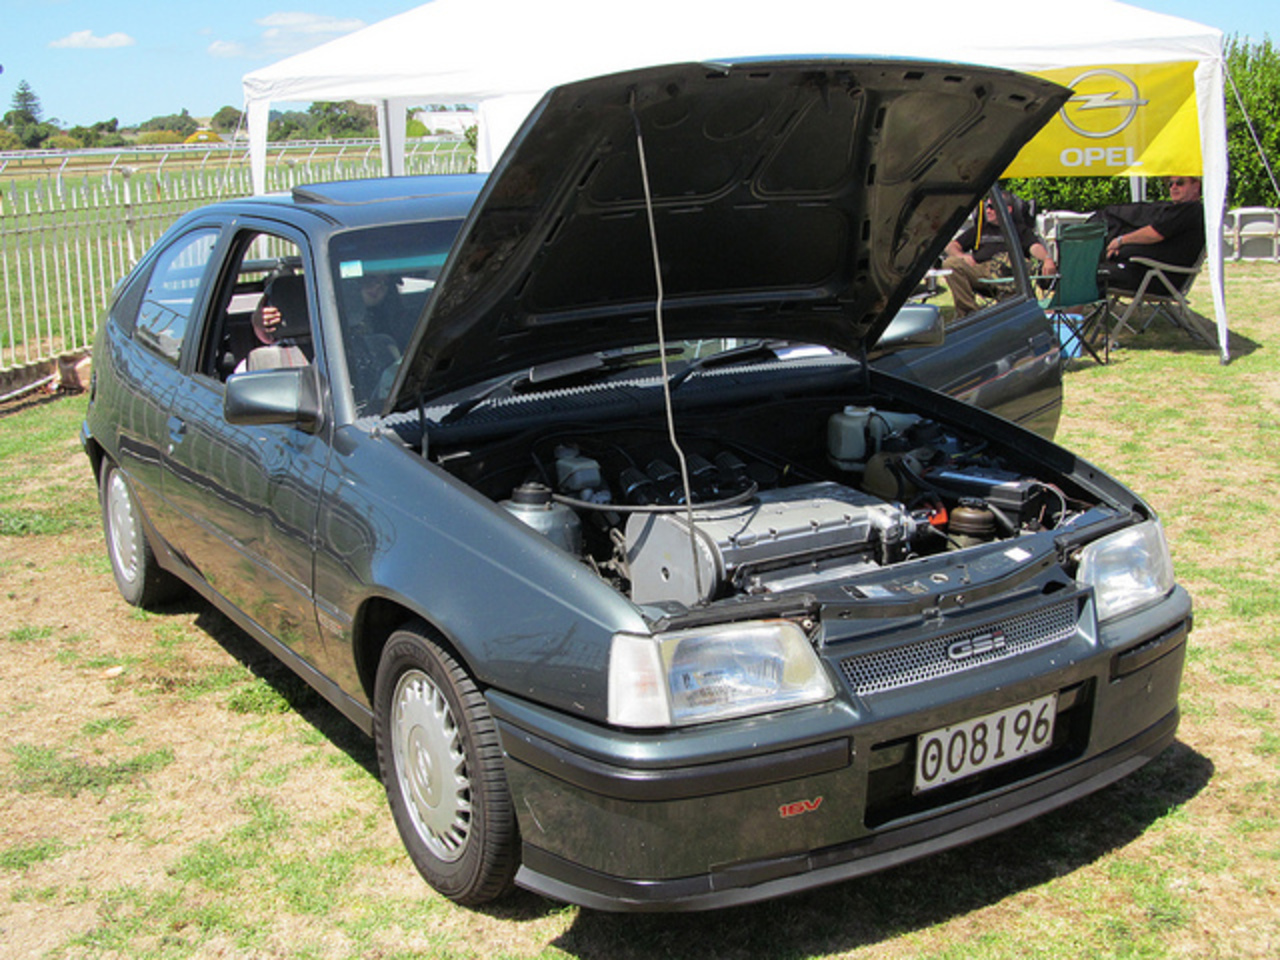 1989 Opel Kadett GSi 16v | Flickr - Photo Sharing!